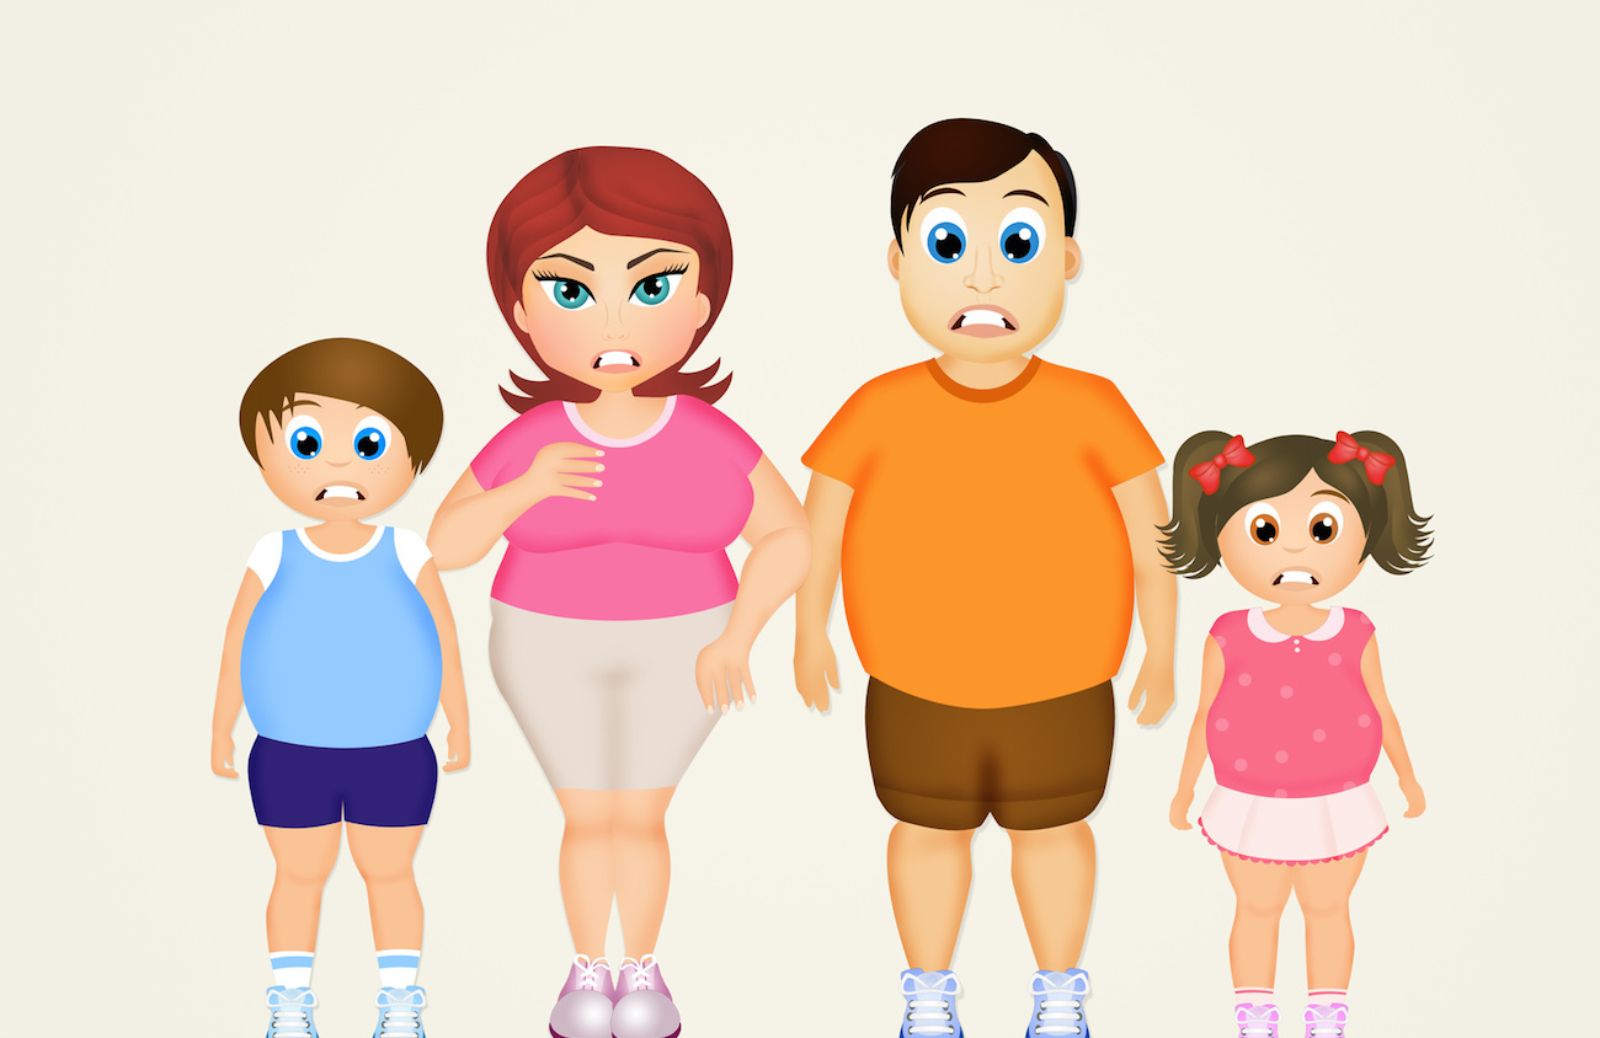 Obesità nei bambini: per il 40% si eredita dai genitori